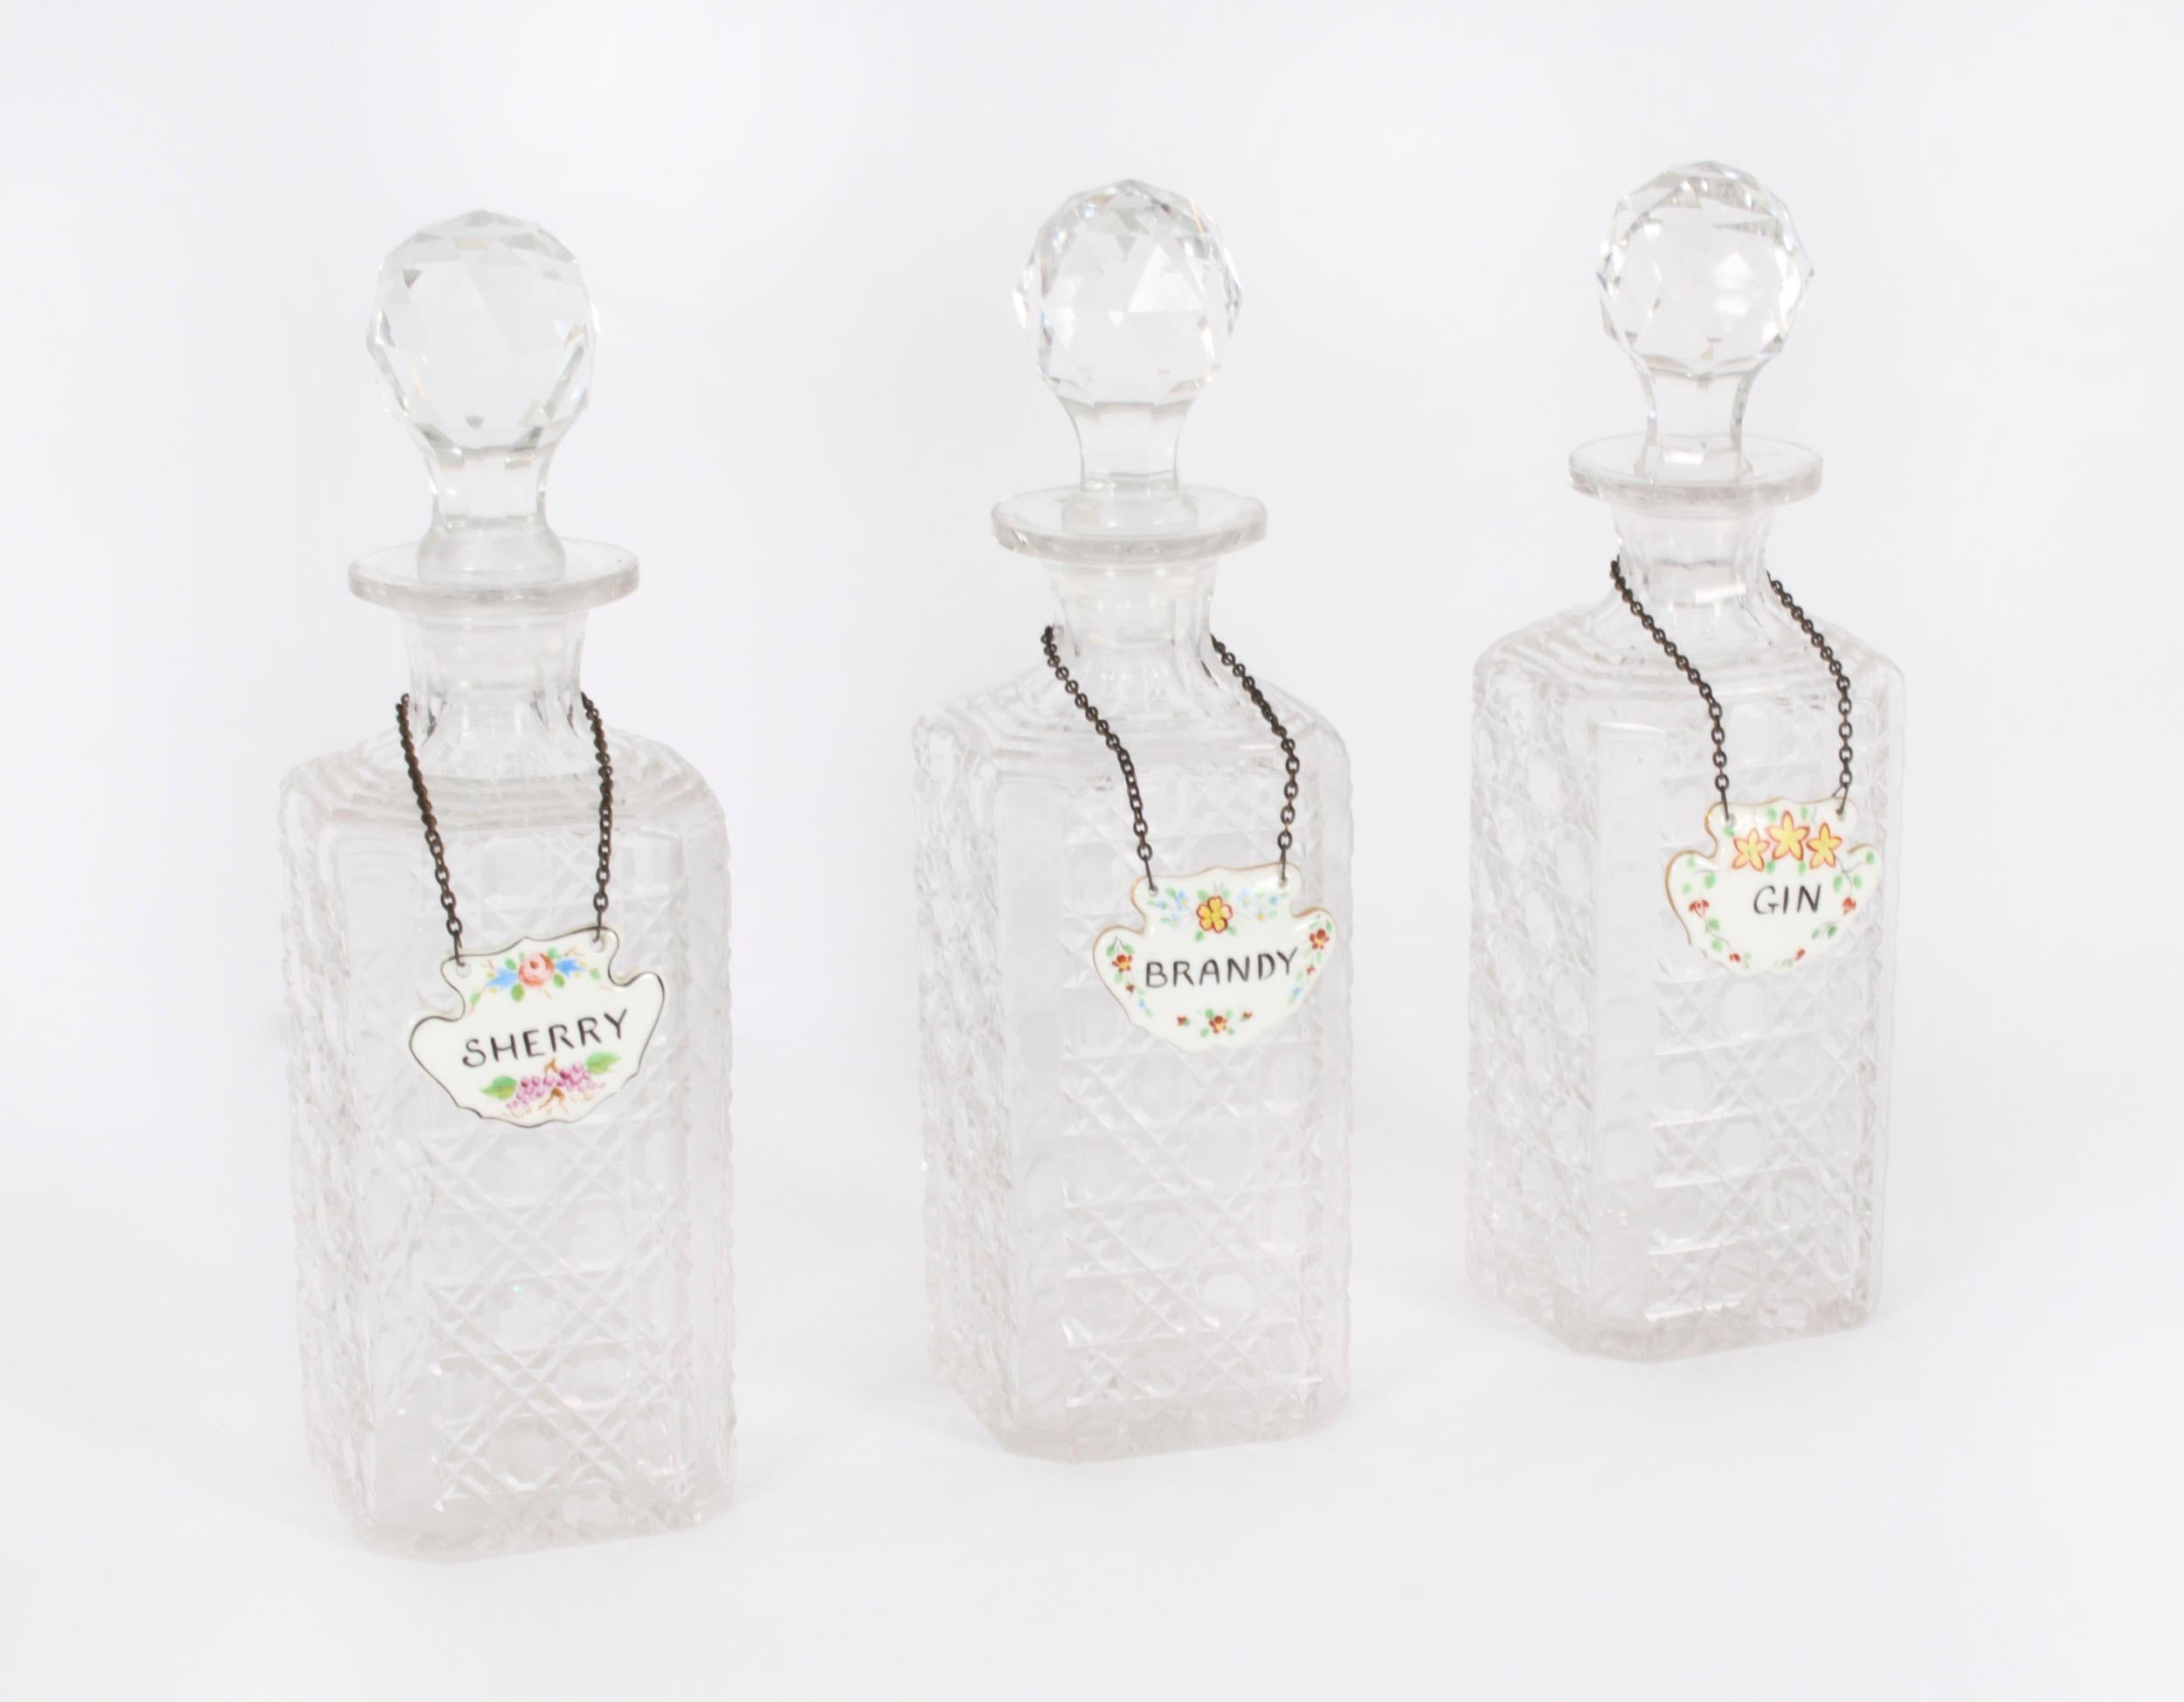 Superbe ensemble de trois carafes carrées et bouchons en cristal taillé, avec des labels en porcelaine portant l'inscription 